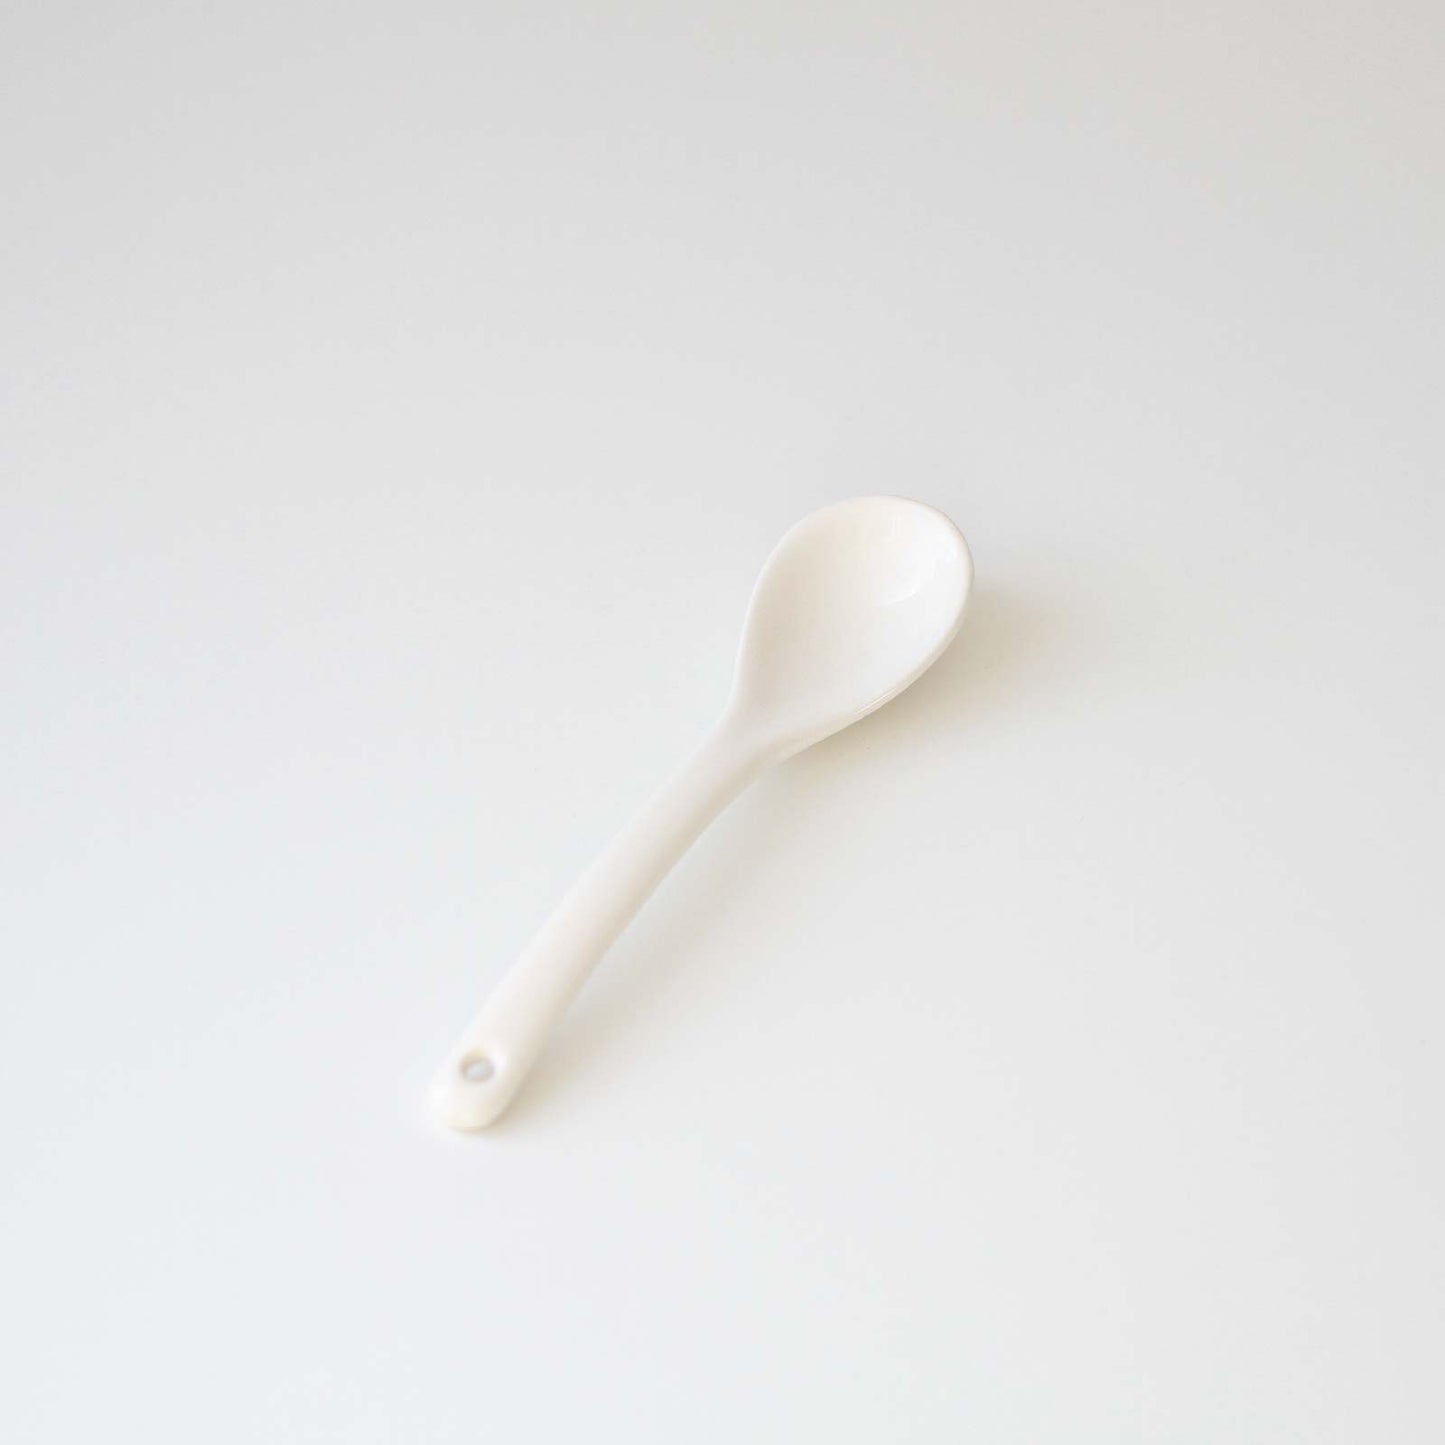 Spoon / Tea Spoon